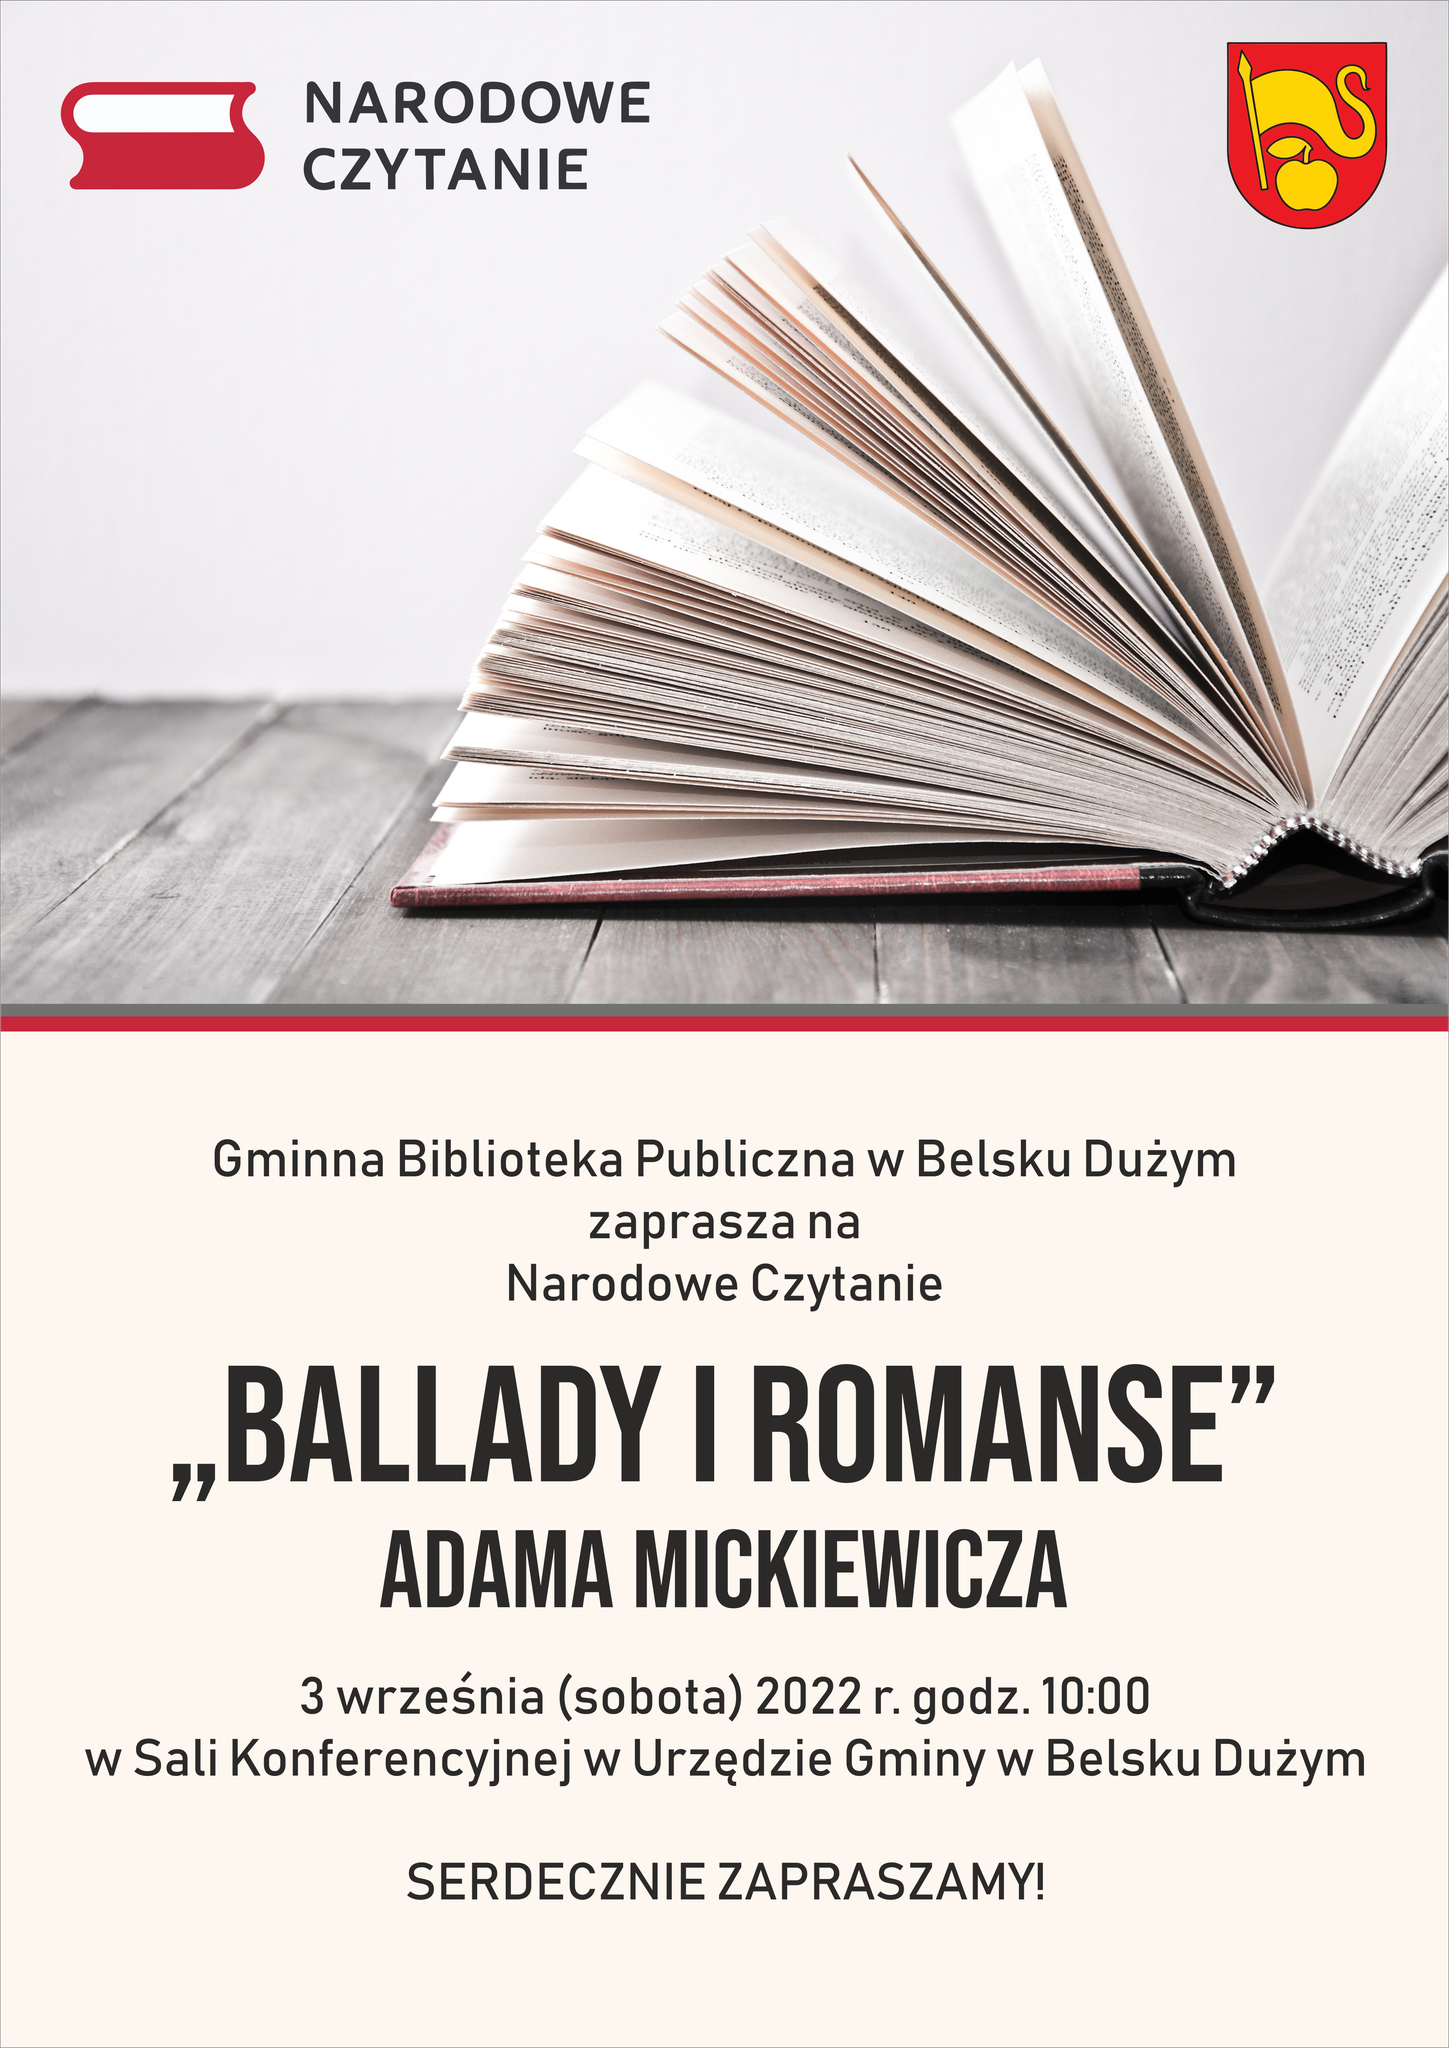 Ballady i Romanse -Narodowe Czytanie 2022.png (2.13 MB)